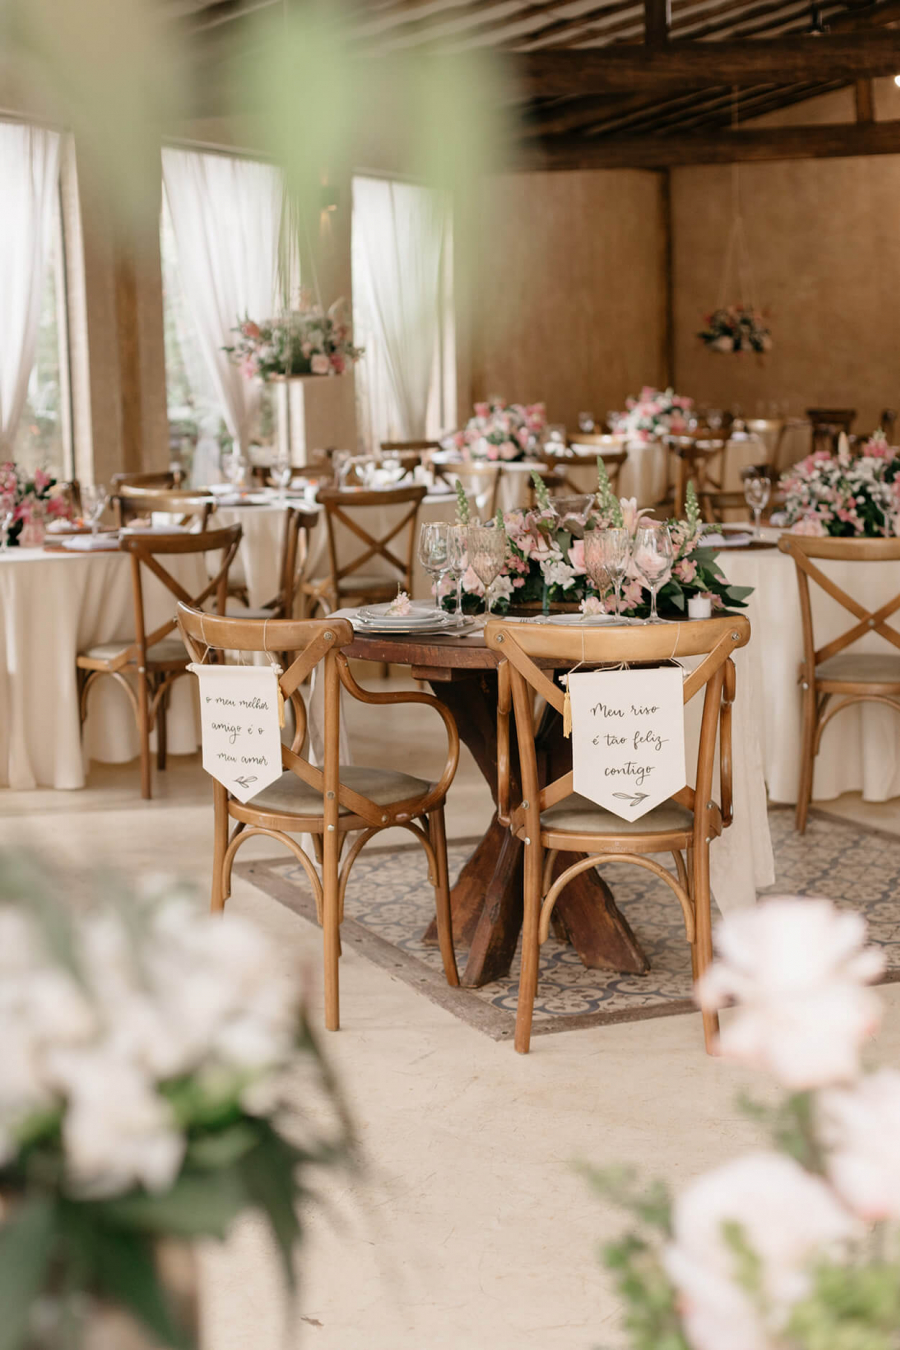 Salão com mesas redondas e decoradas com flores brancas e rosas